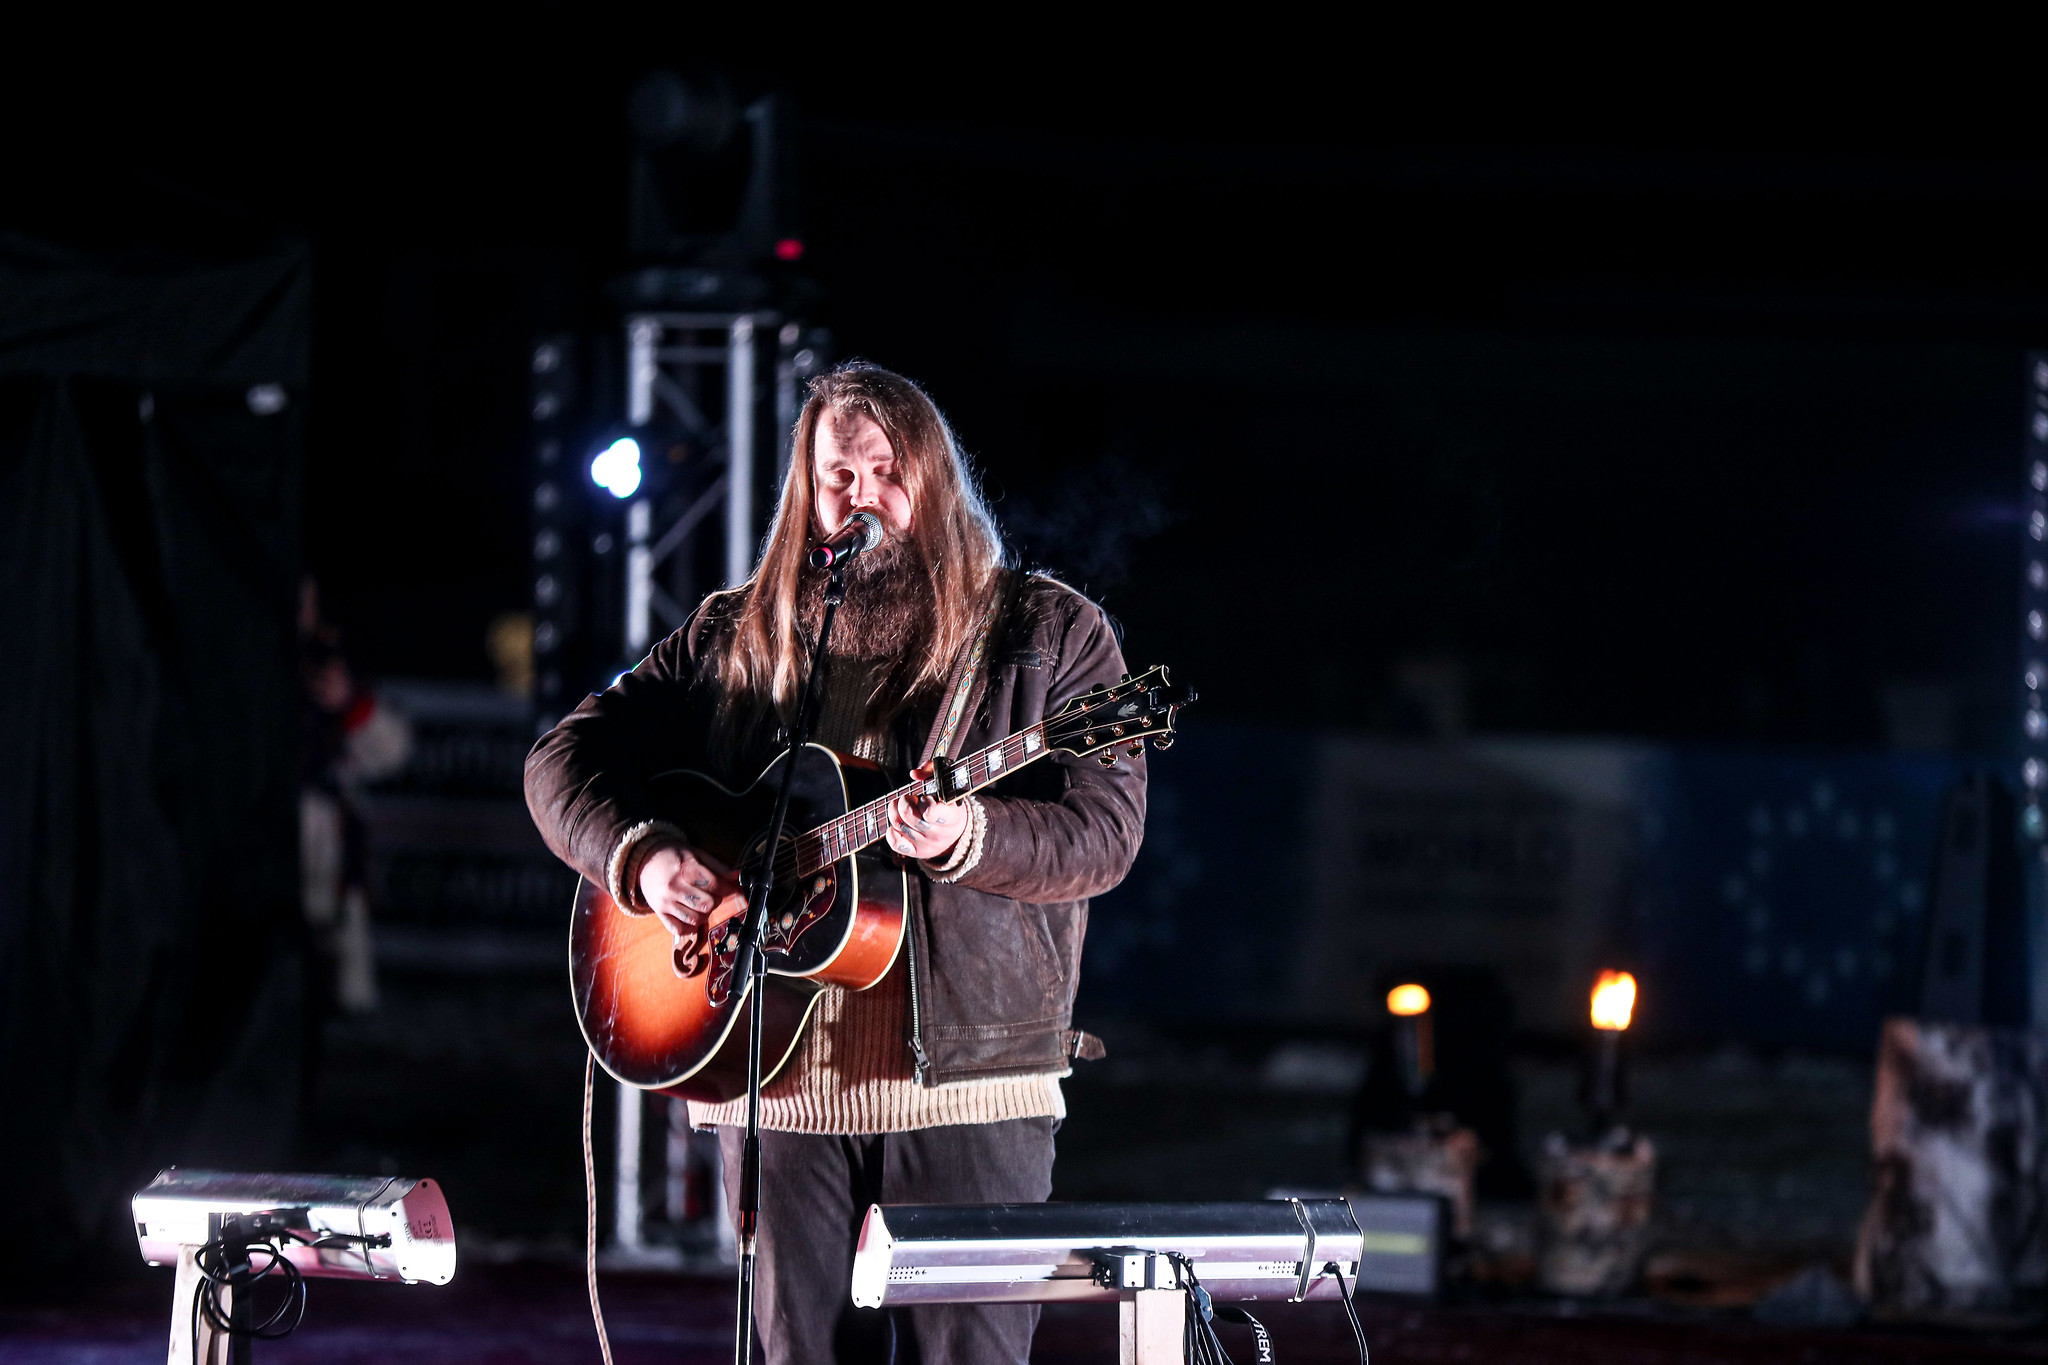 En man står och sjunger med sin gitarr på en scen.